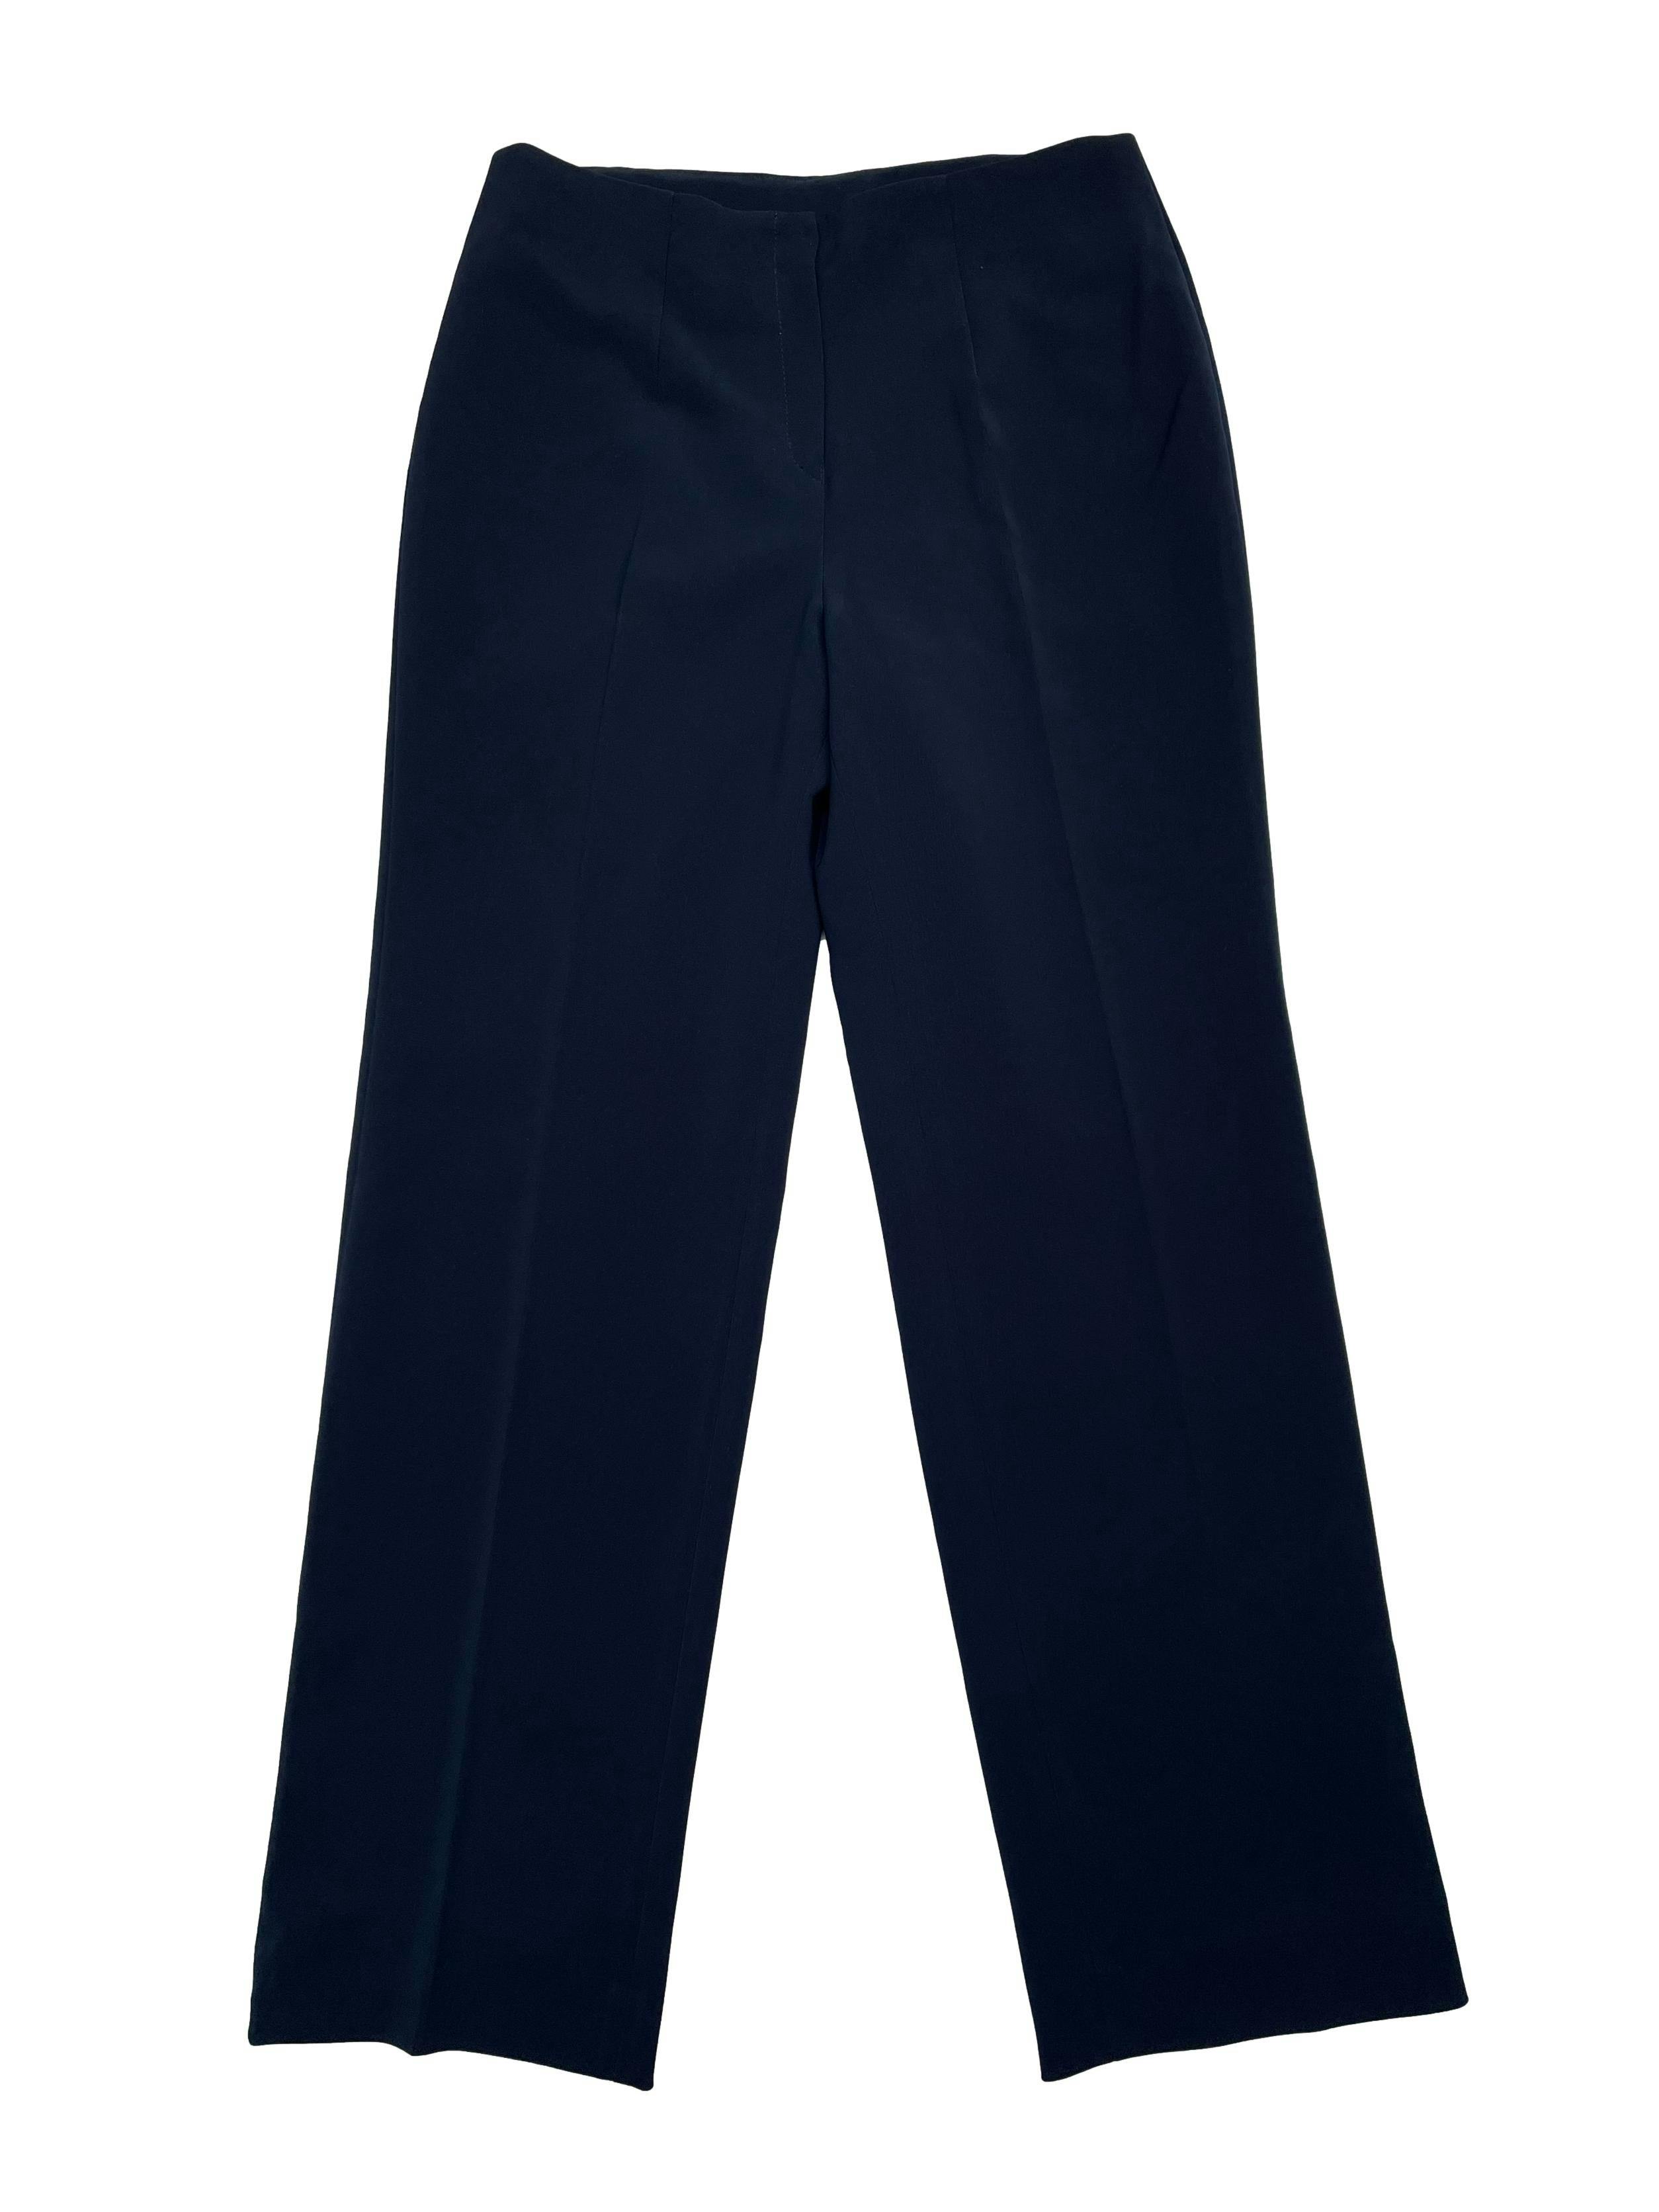 Pantalón formal azul, forrado, corte recto y cierre delantero. Cintura 70cm Tiro 26cm Largo 98cm